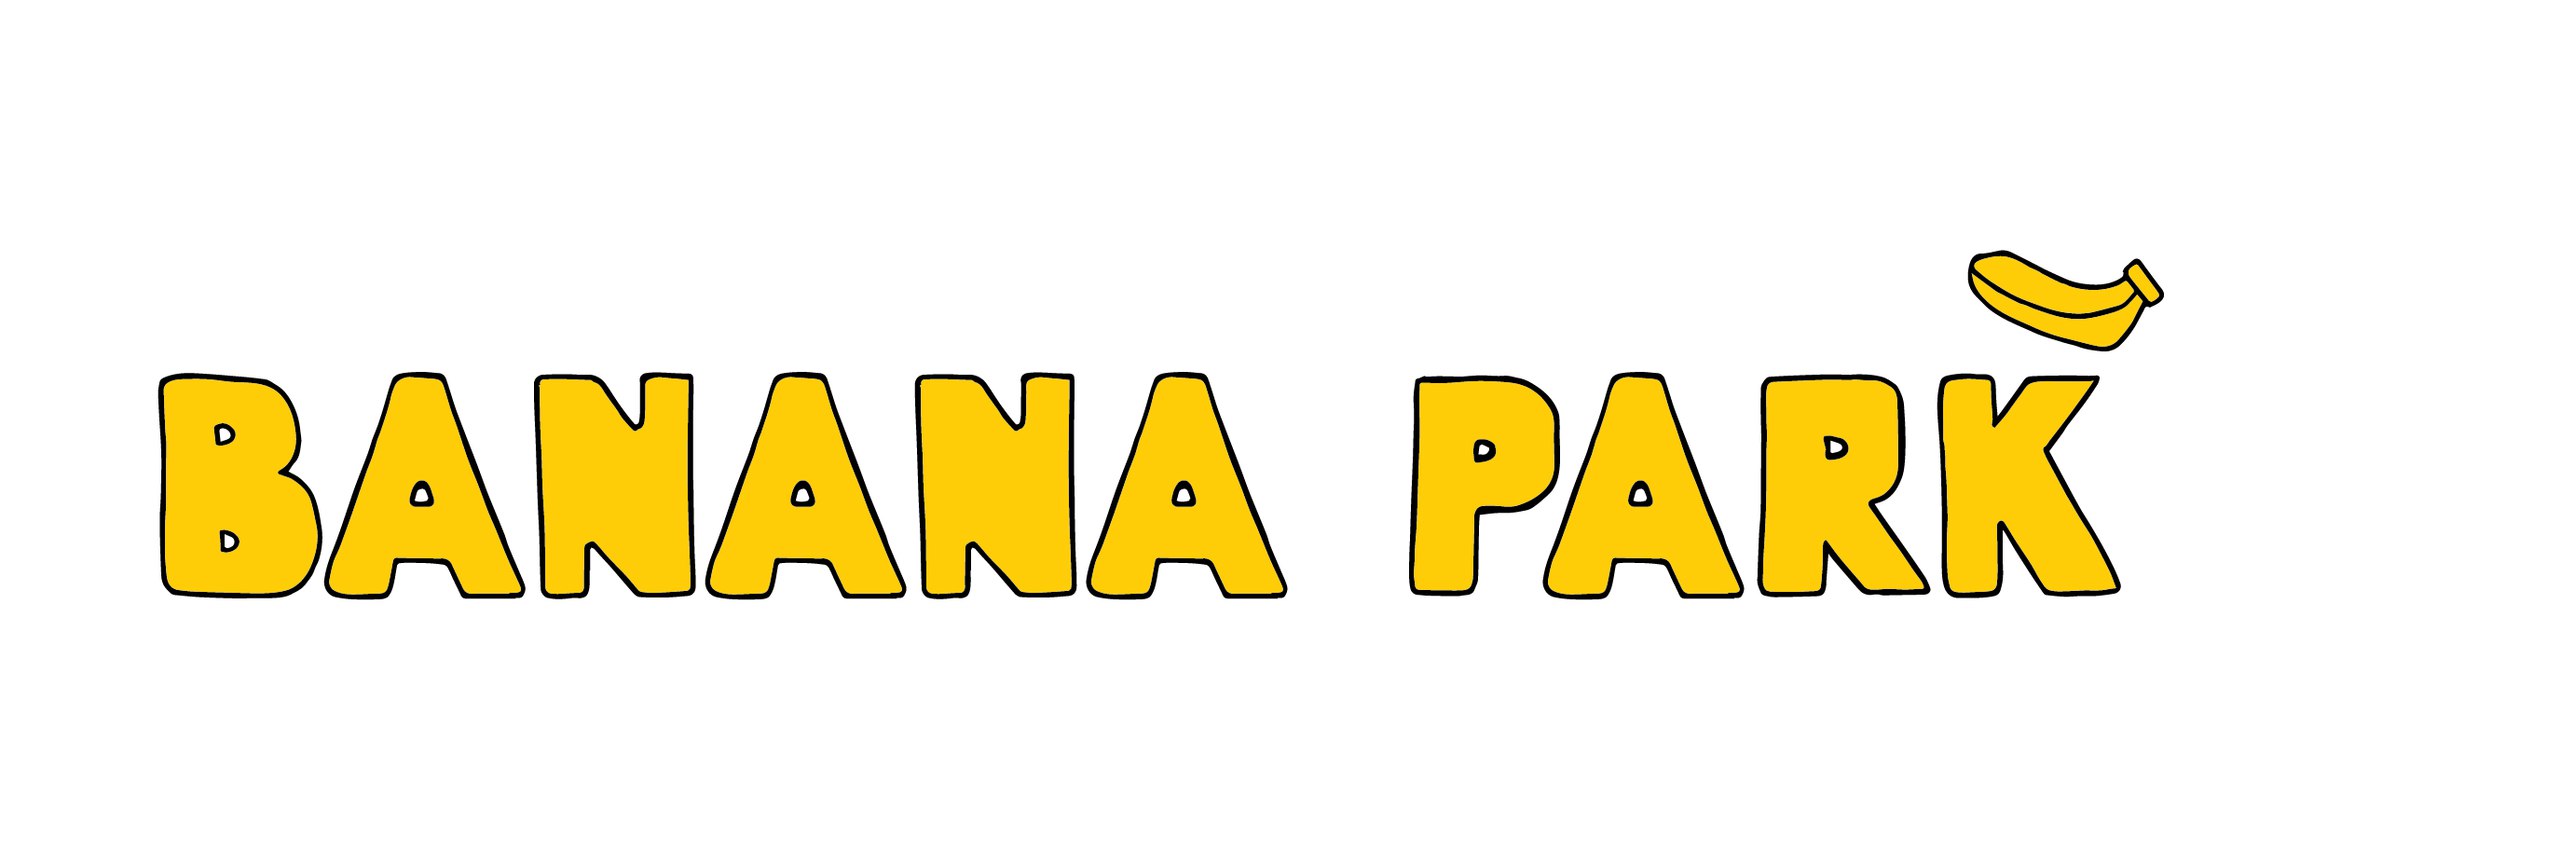 банана парк красноярск мате залки